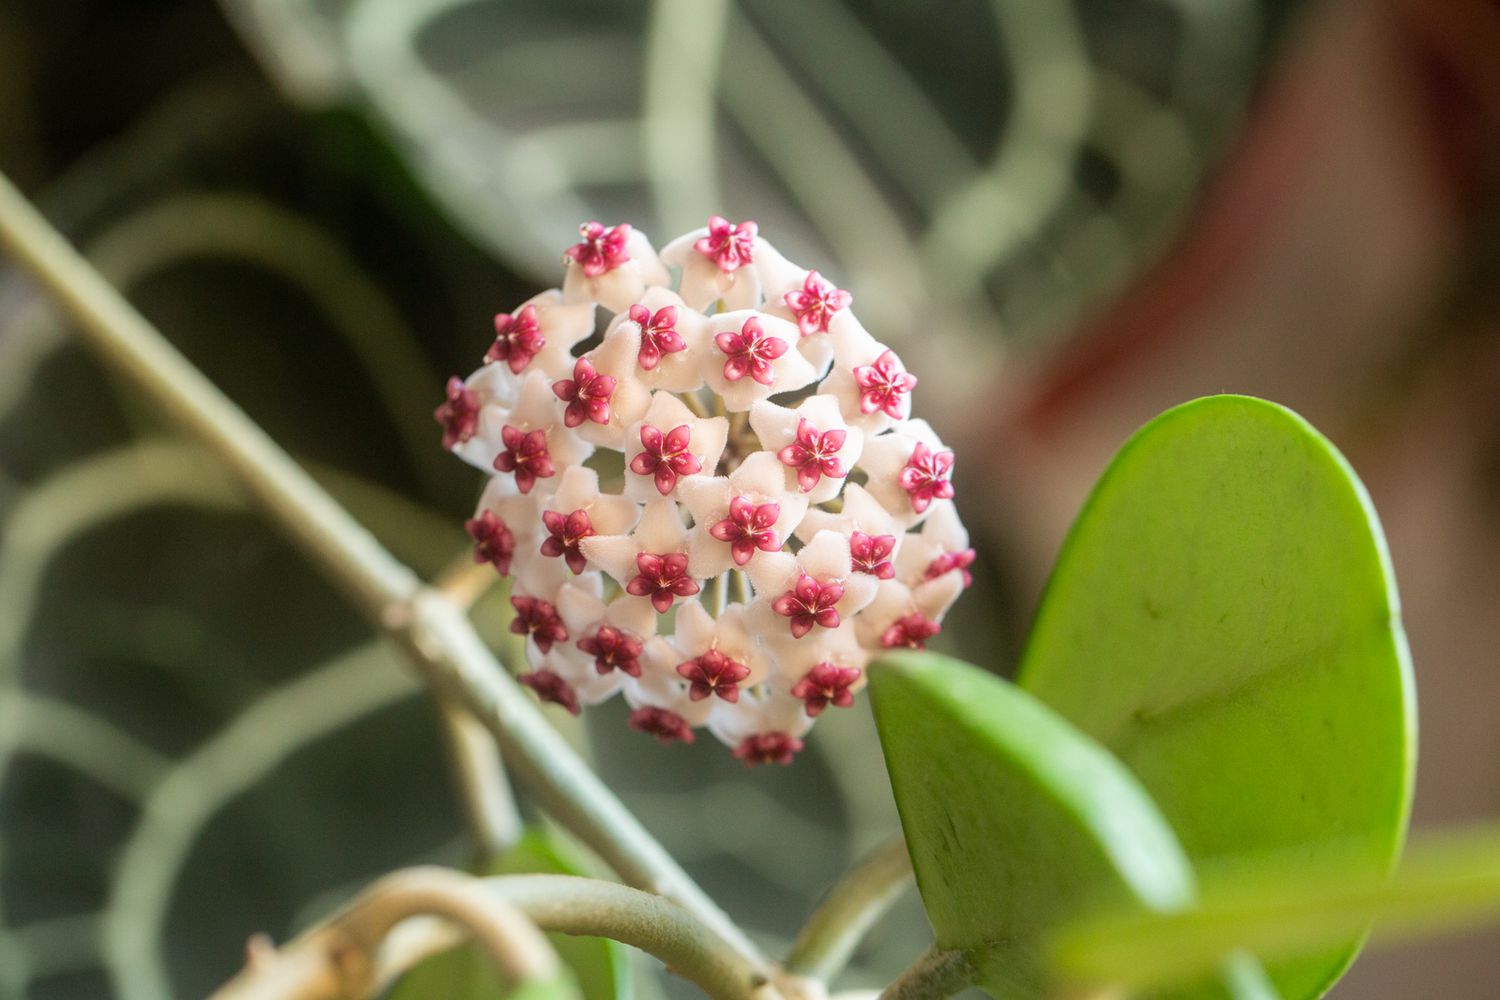 Hoya obovata Halbsukkulente mit kleinen weißen und rosa Blüten in Nahaufnahme